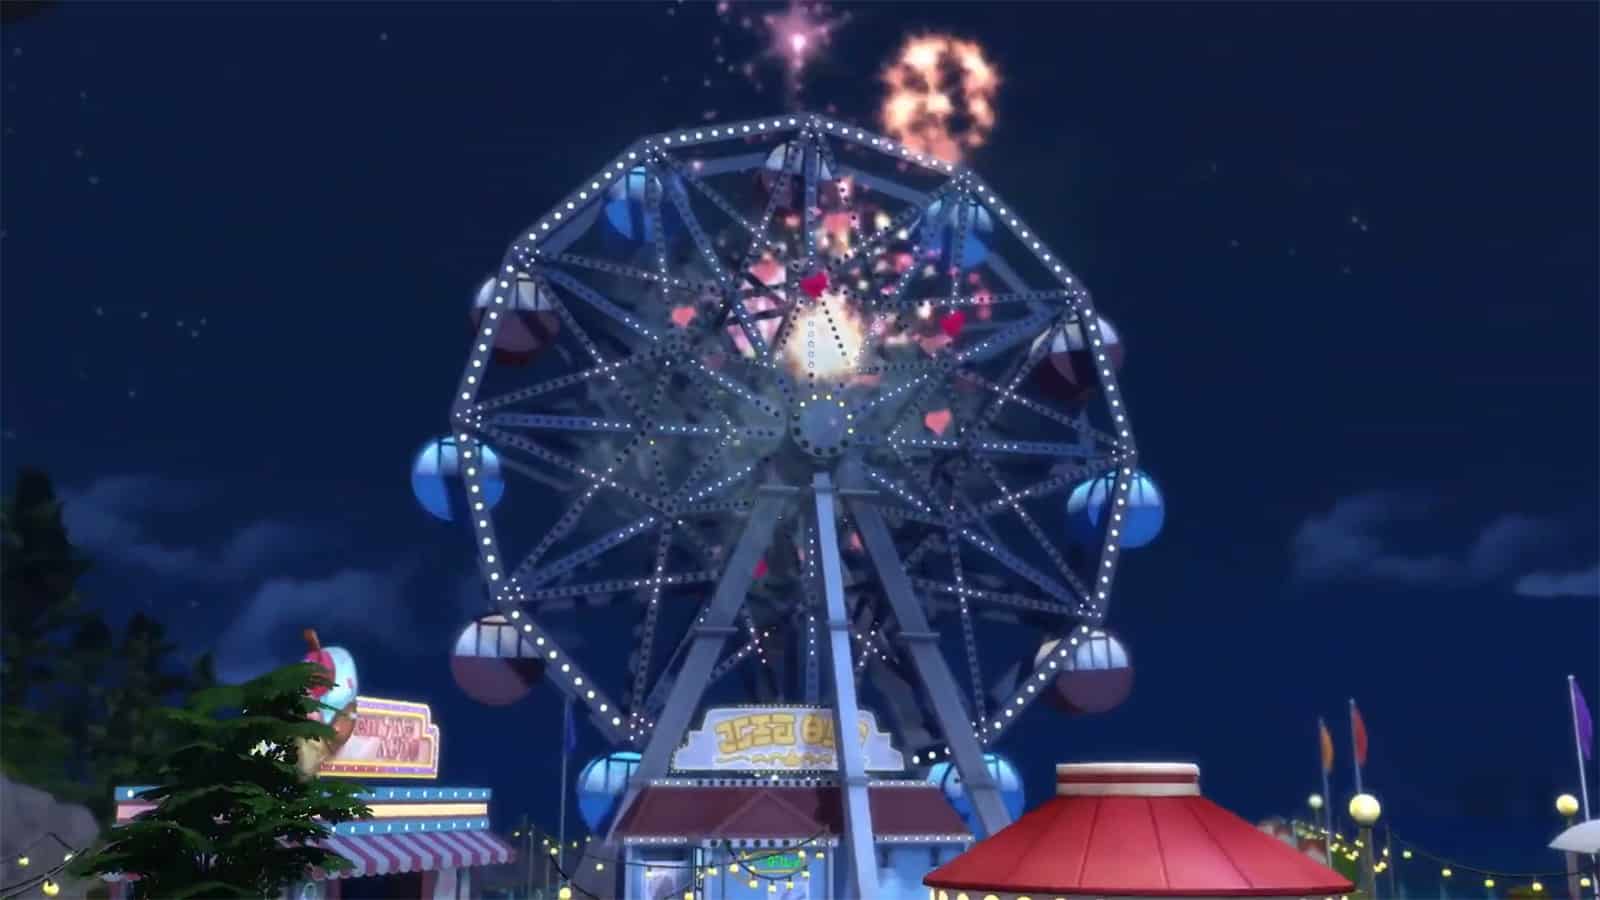 A ferris wheel in The Sims 4